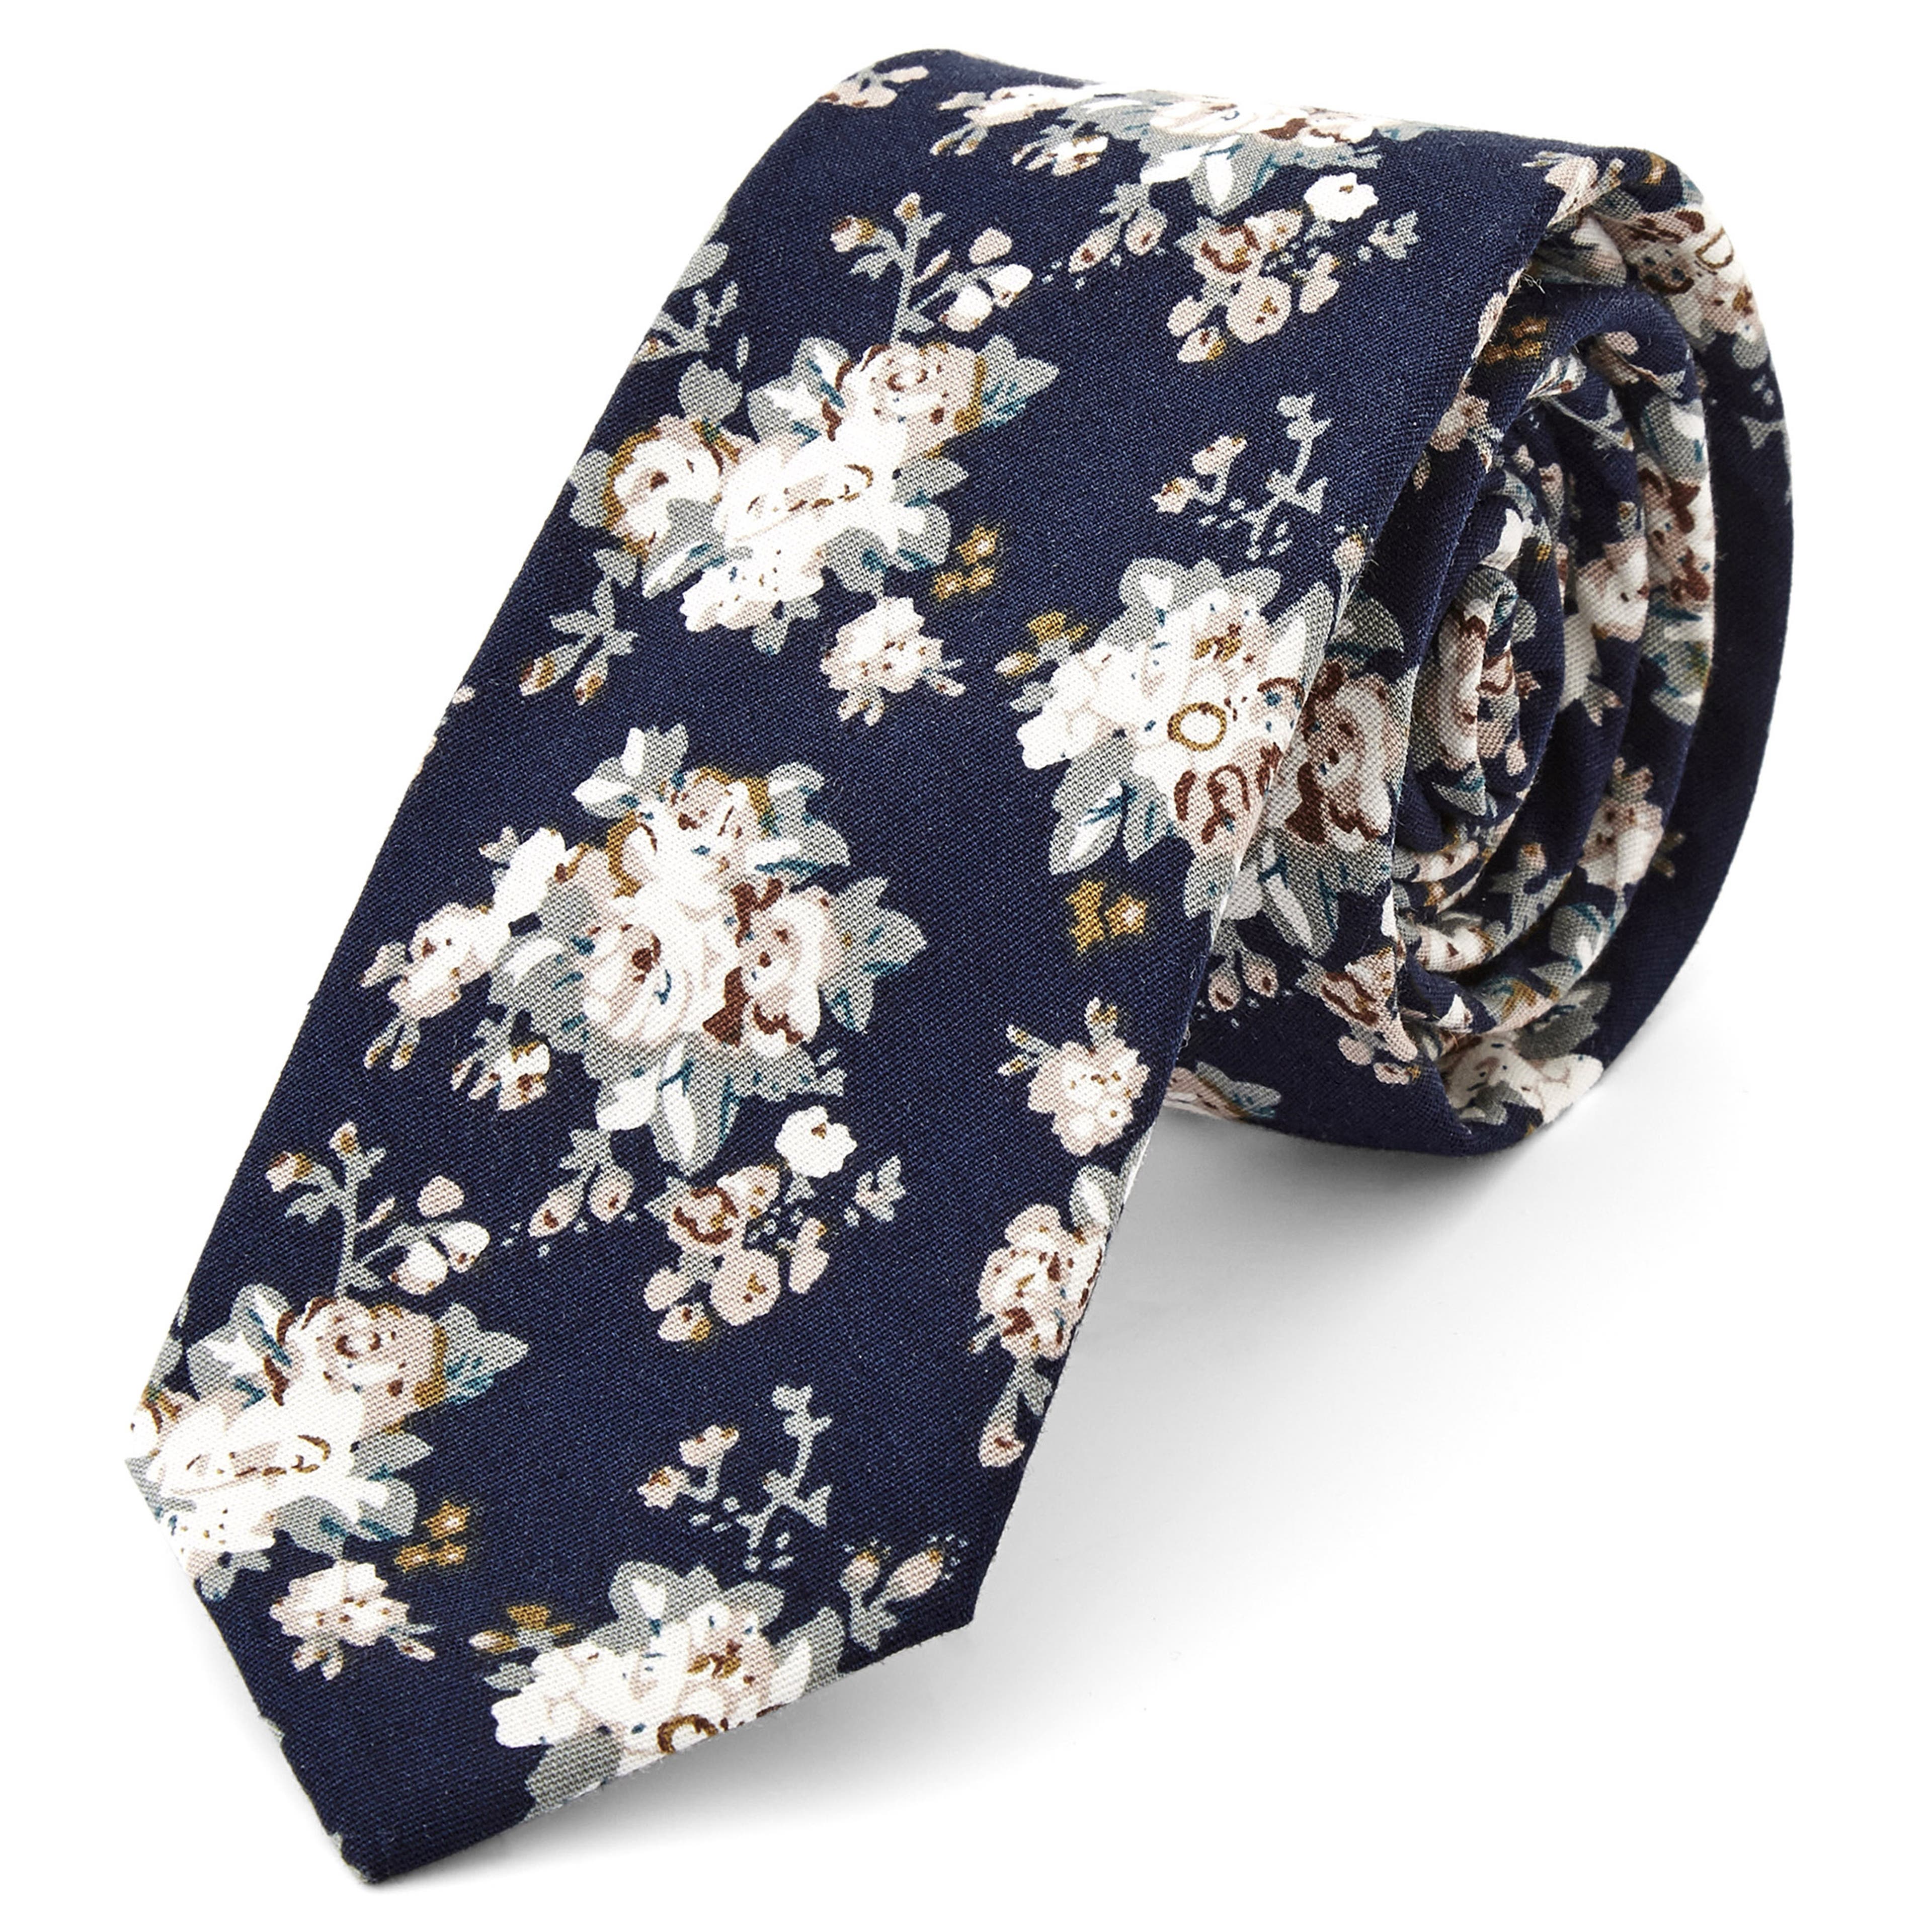 Corbata floral en azul y blanco